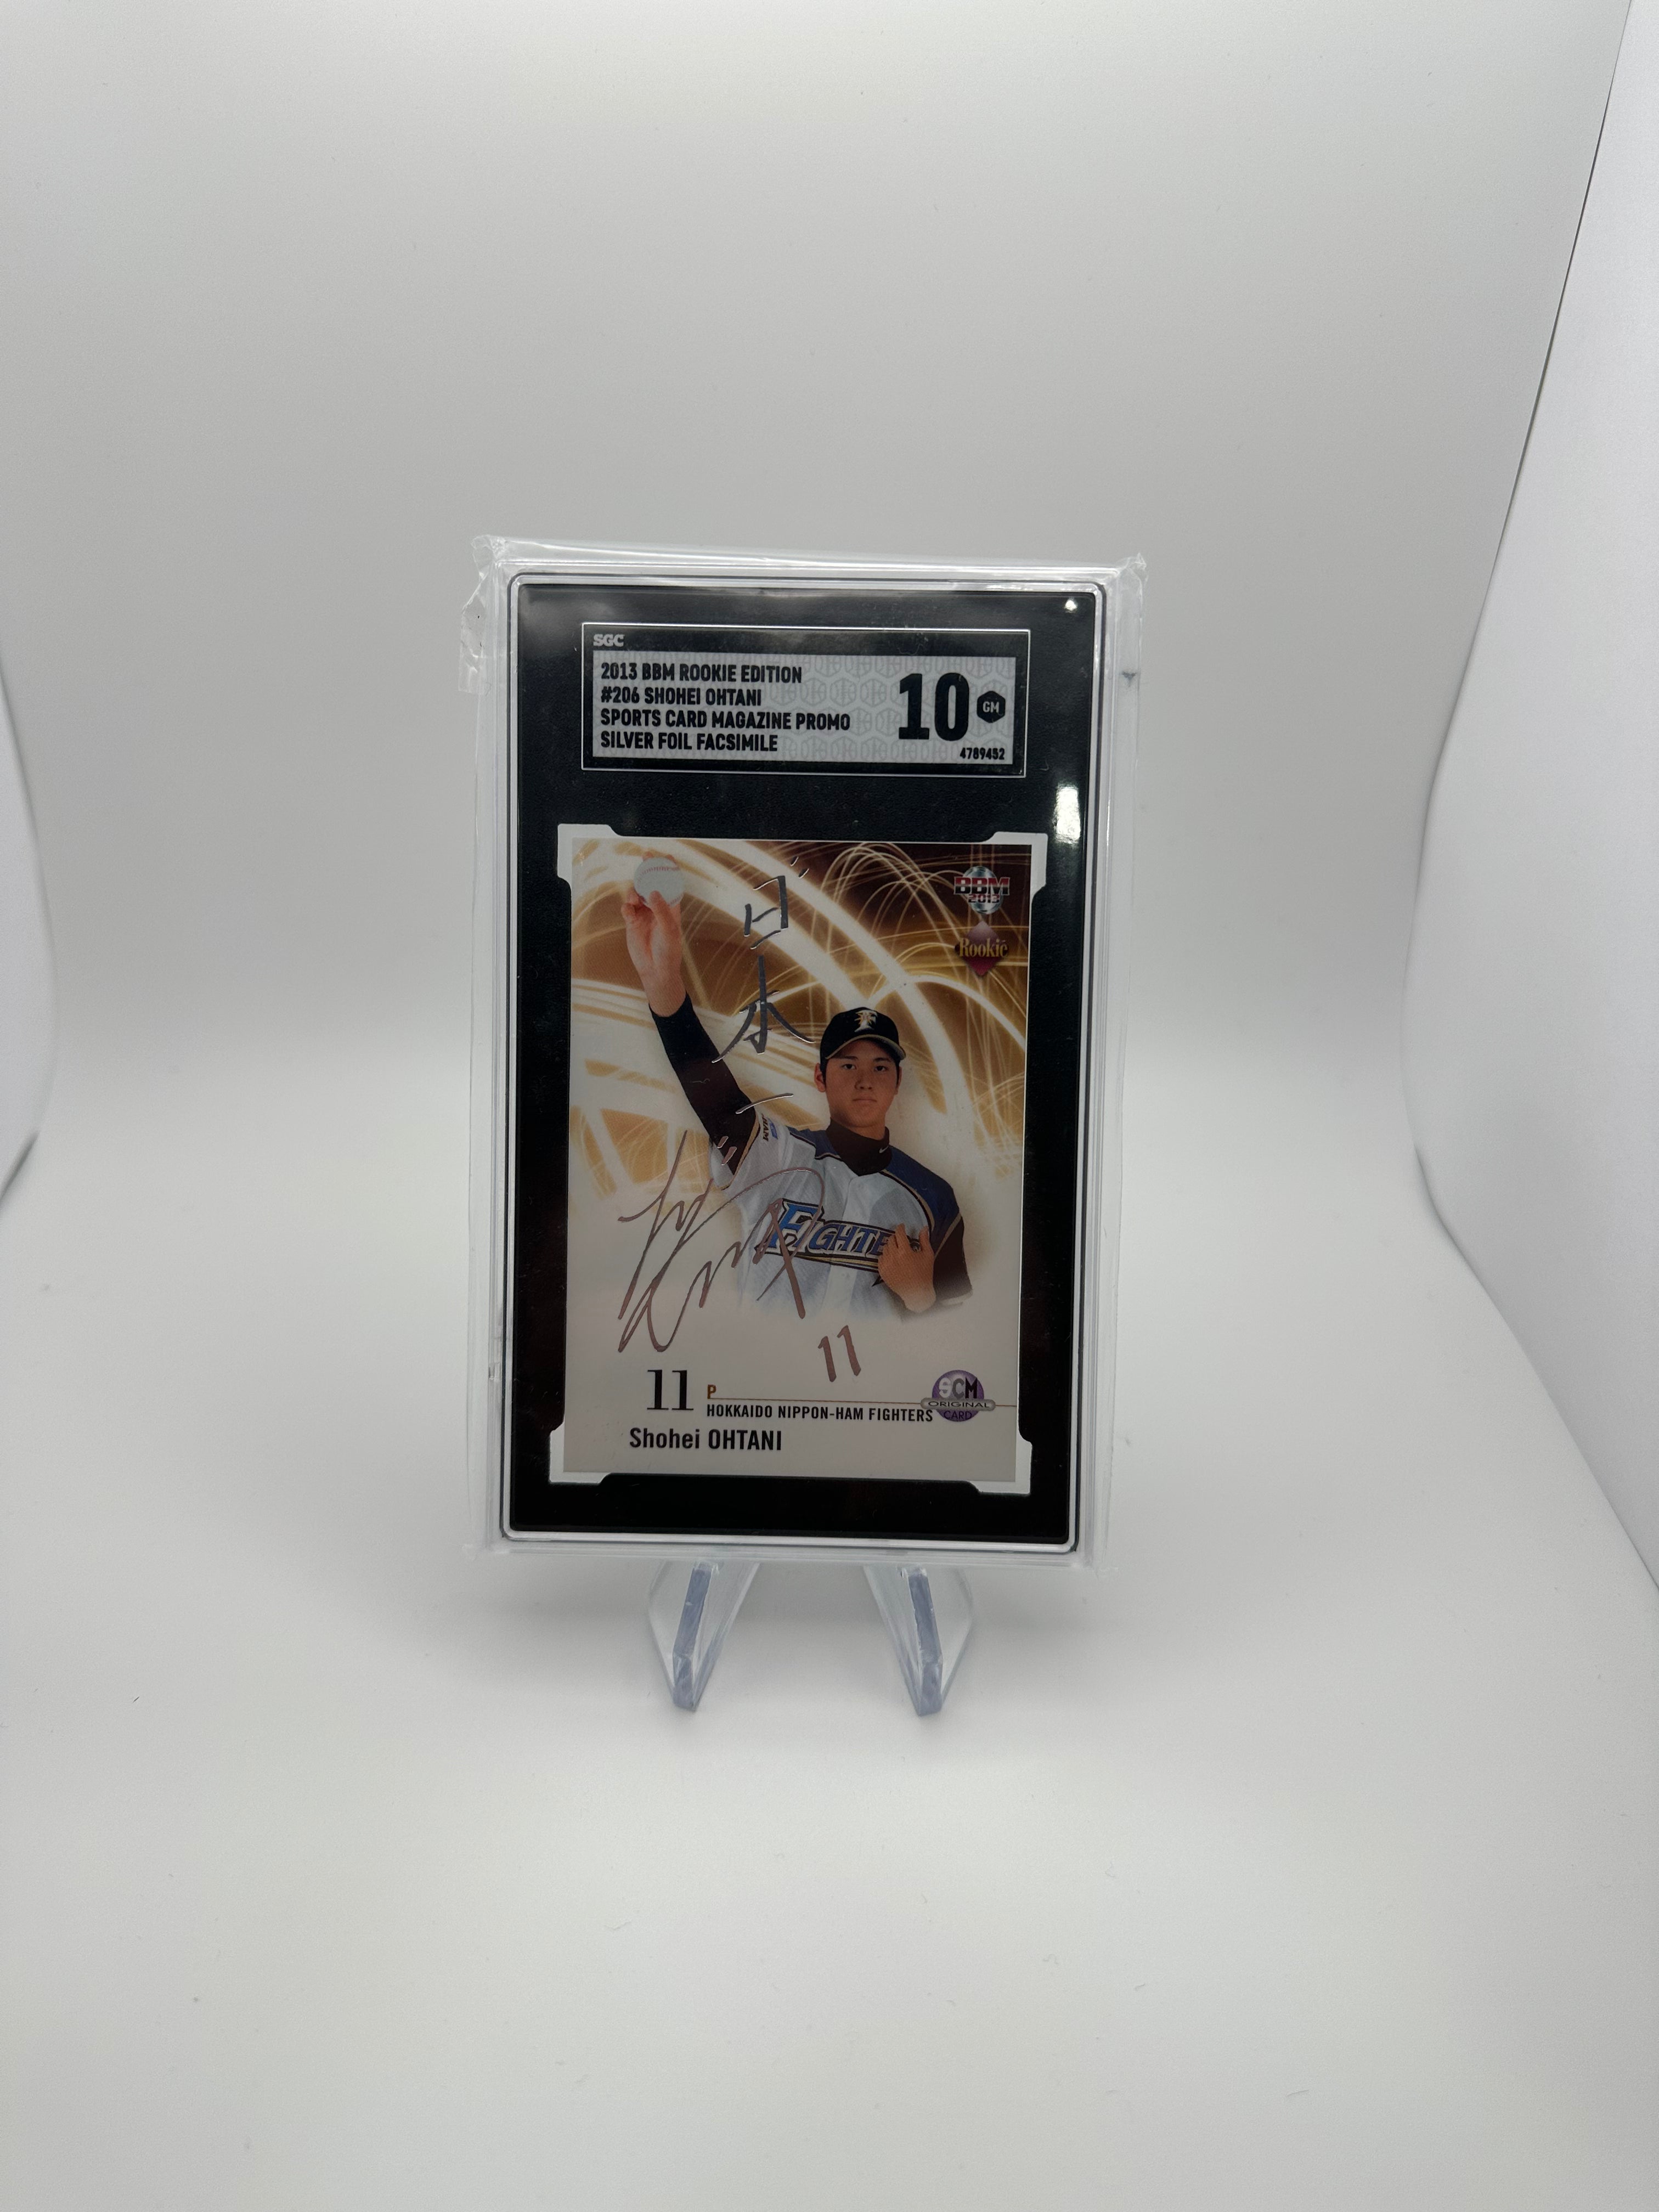 2013 BBM Rookie Edition Baseball - Shohei Ohtani 206 - Silver Foil Facsimile  - SGC 10